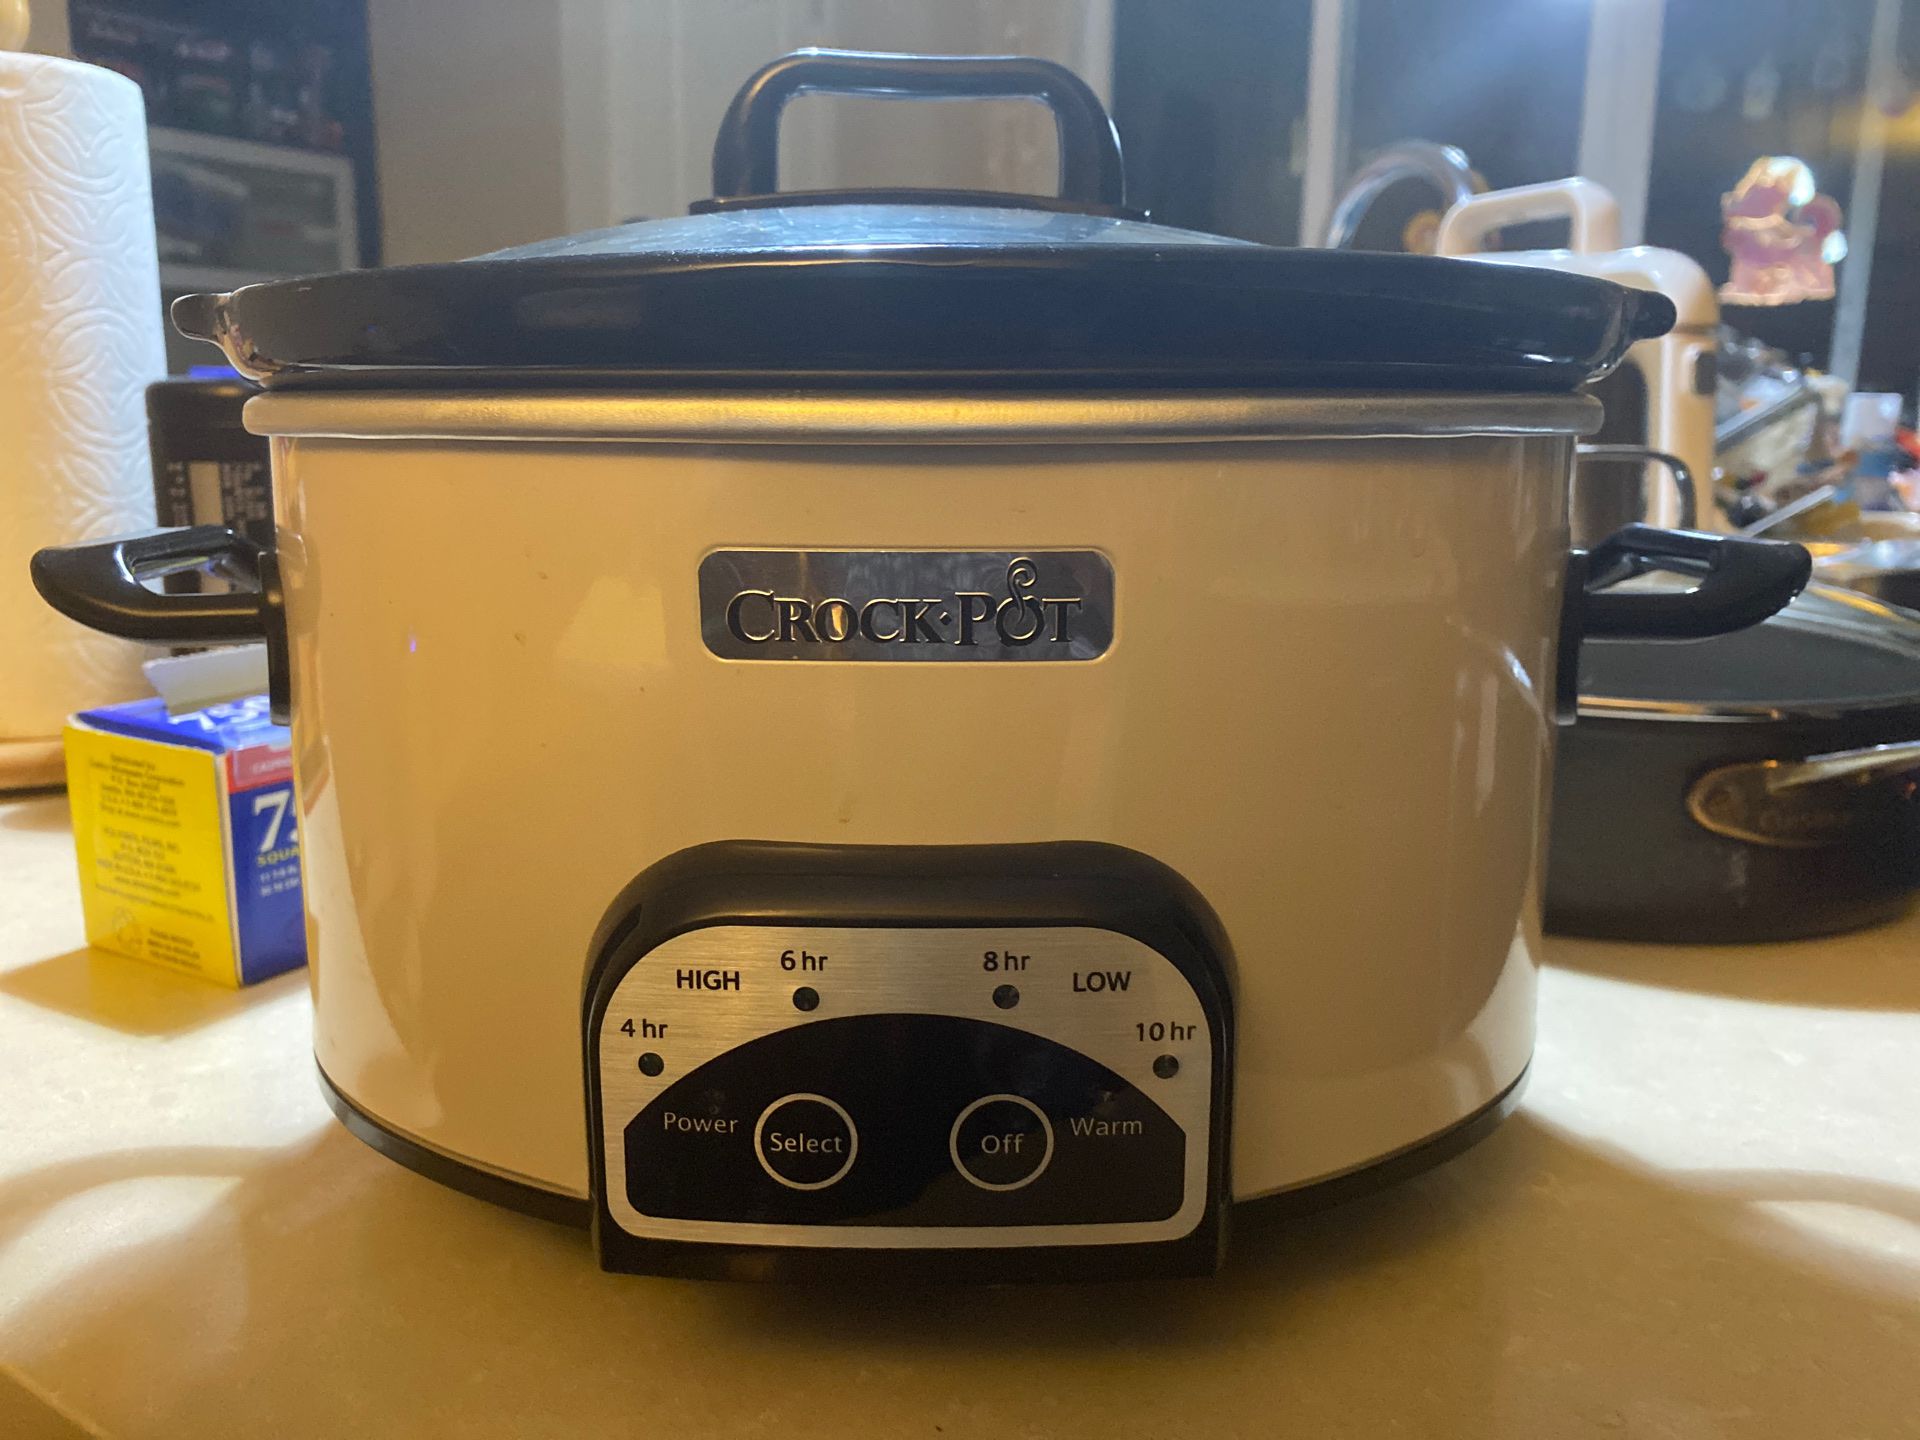 Crock Pot 4-qt digital slow cooker - model SCCPVP400-PY